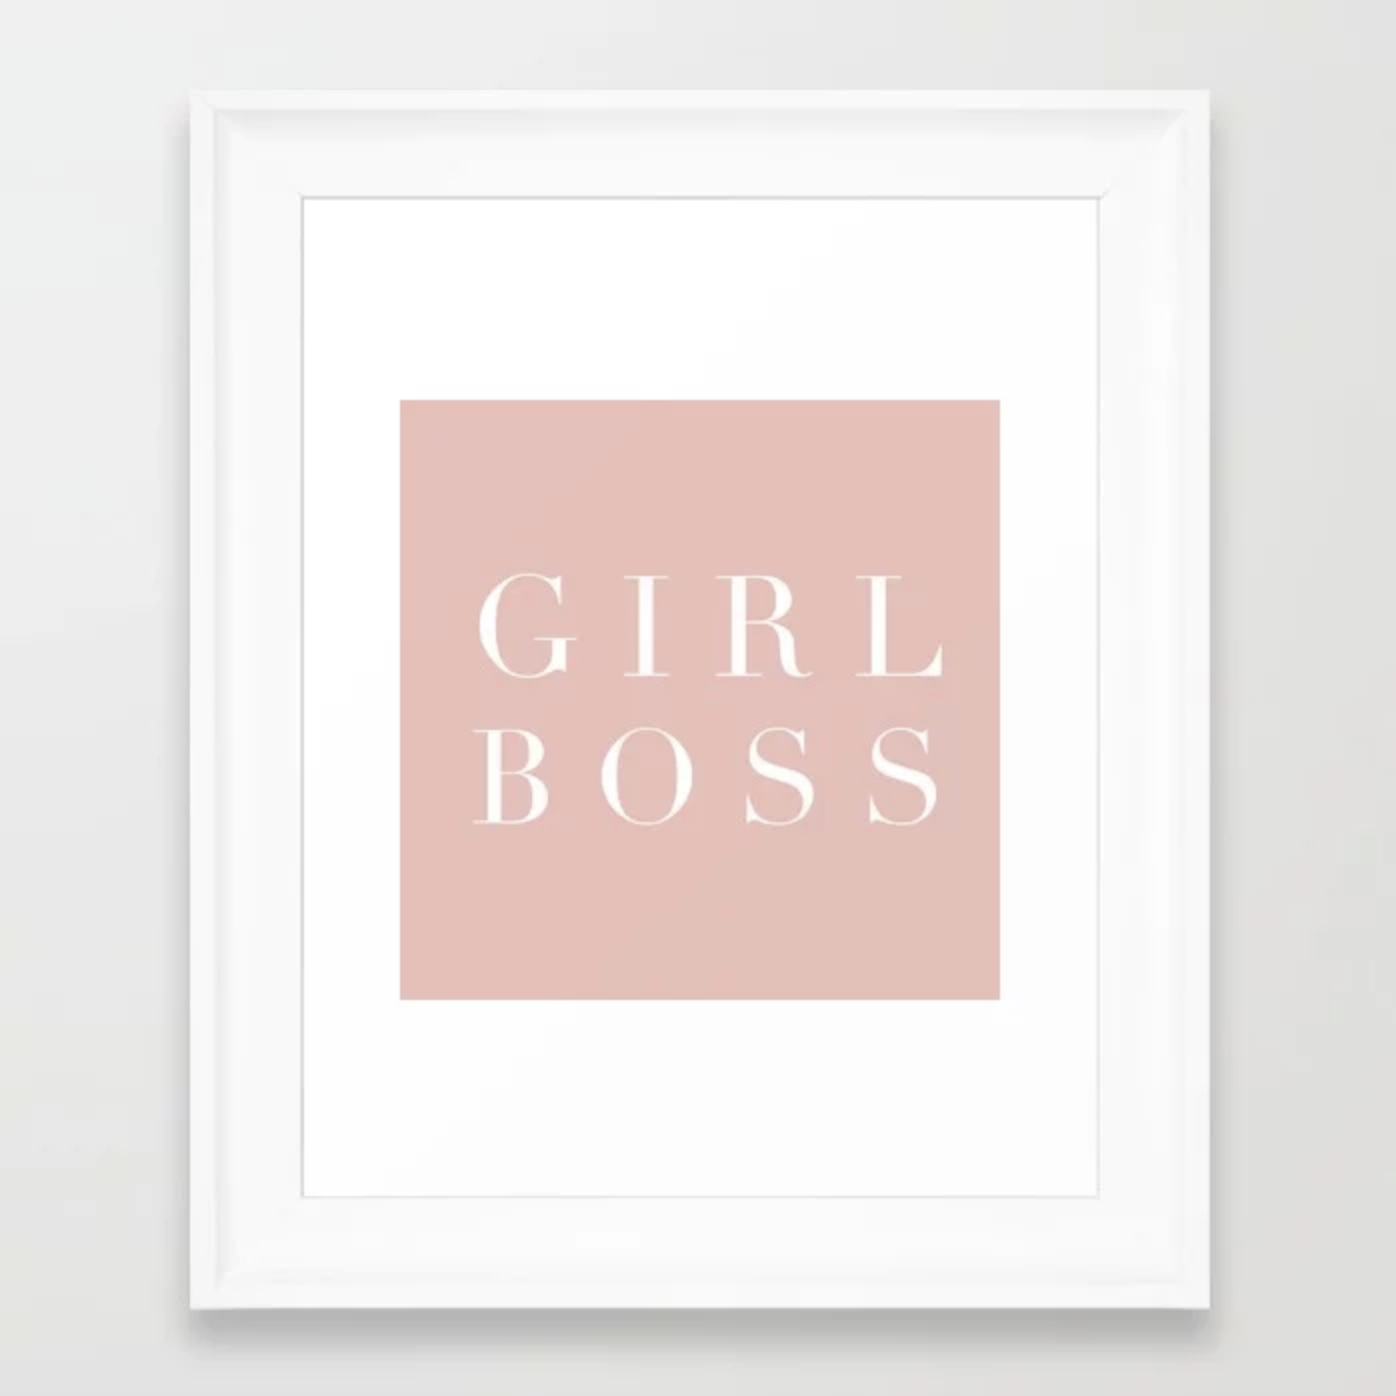 Girlboss Gift Ideas Birthday Gift Inspiration GIRL BOSS Framed Art Print